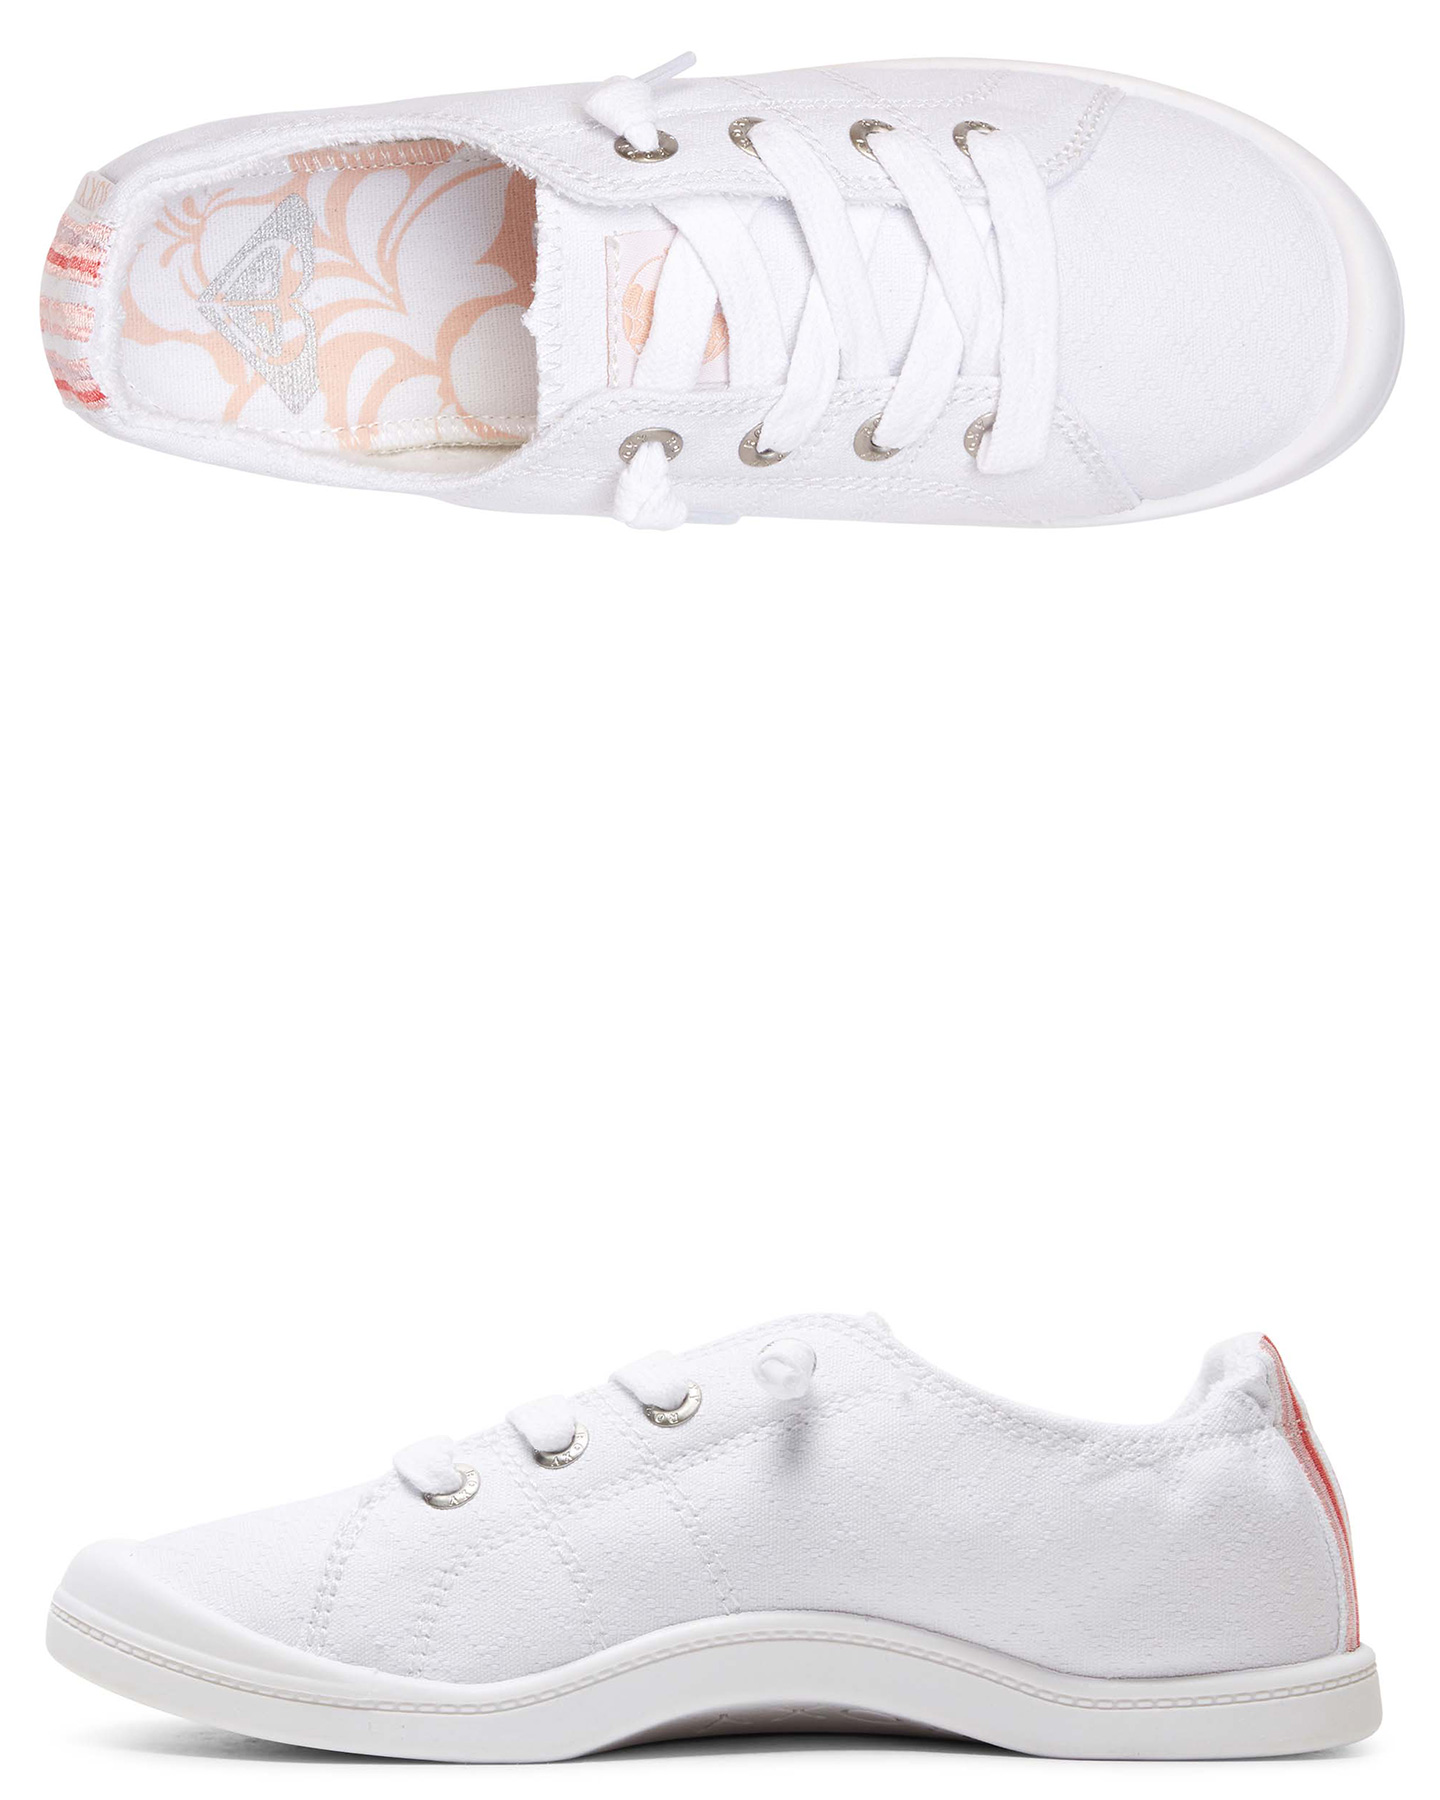 roxy white shoes